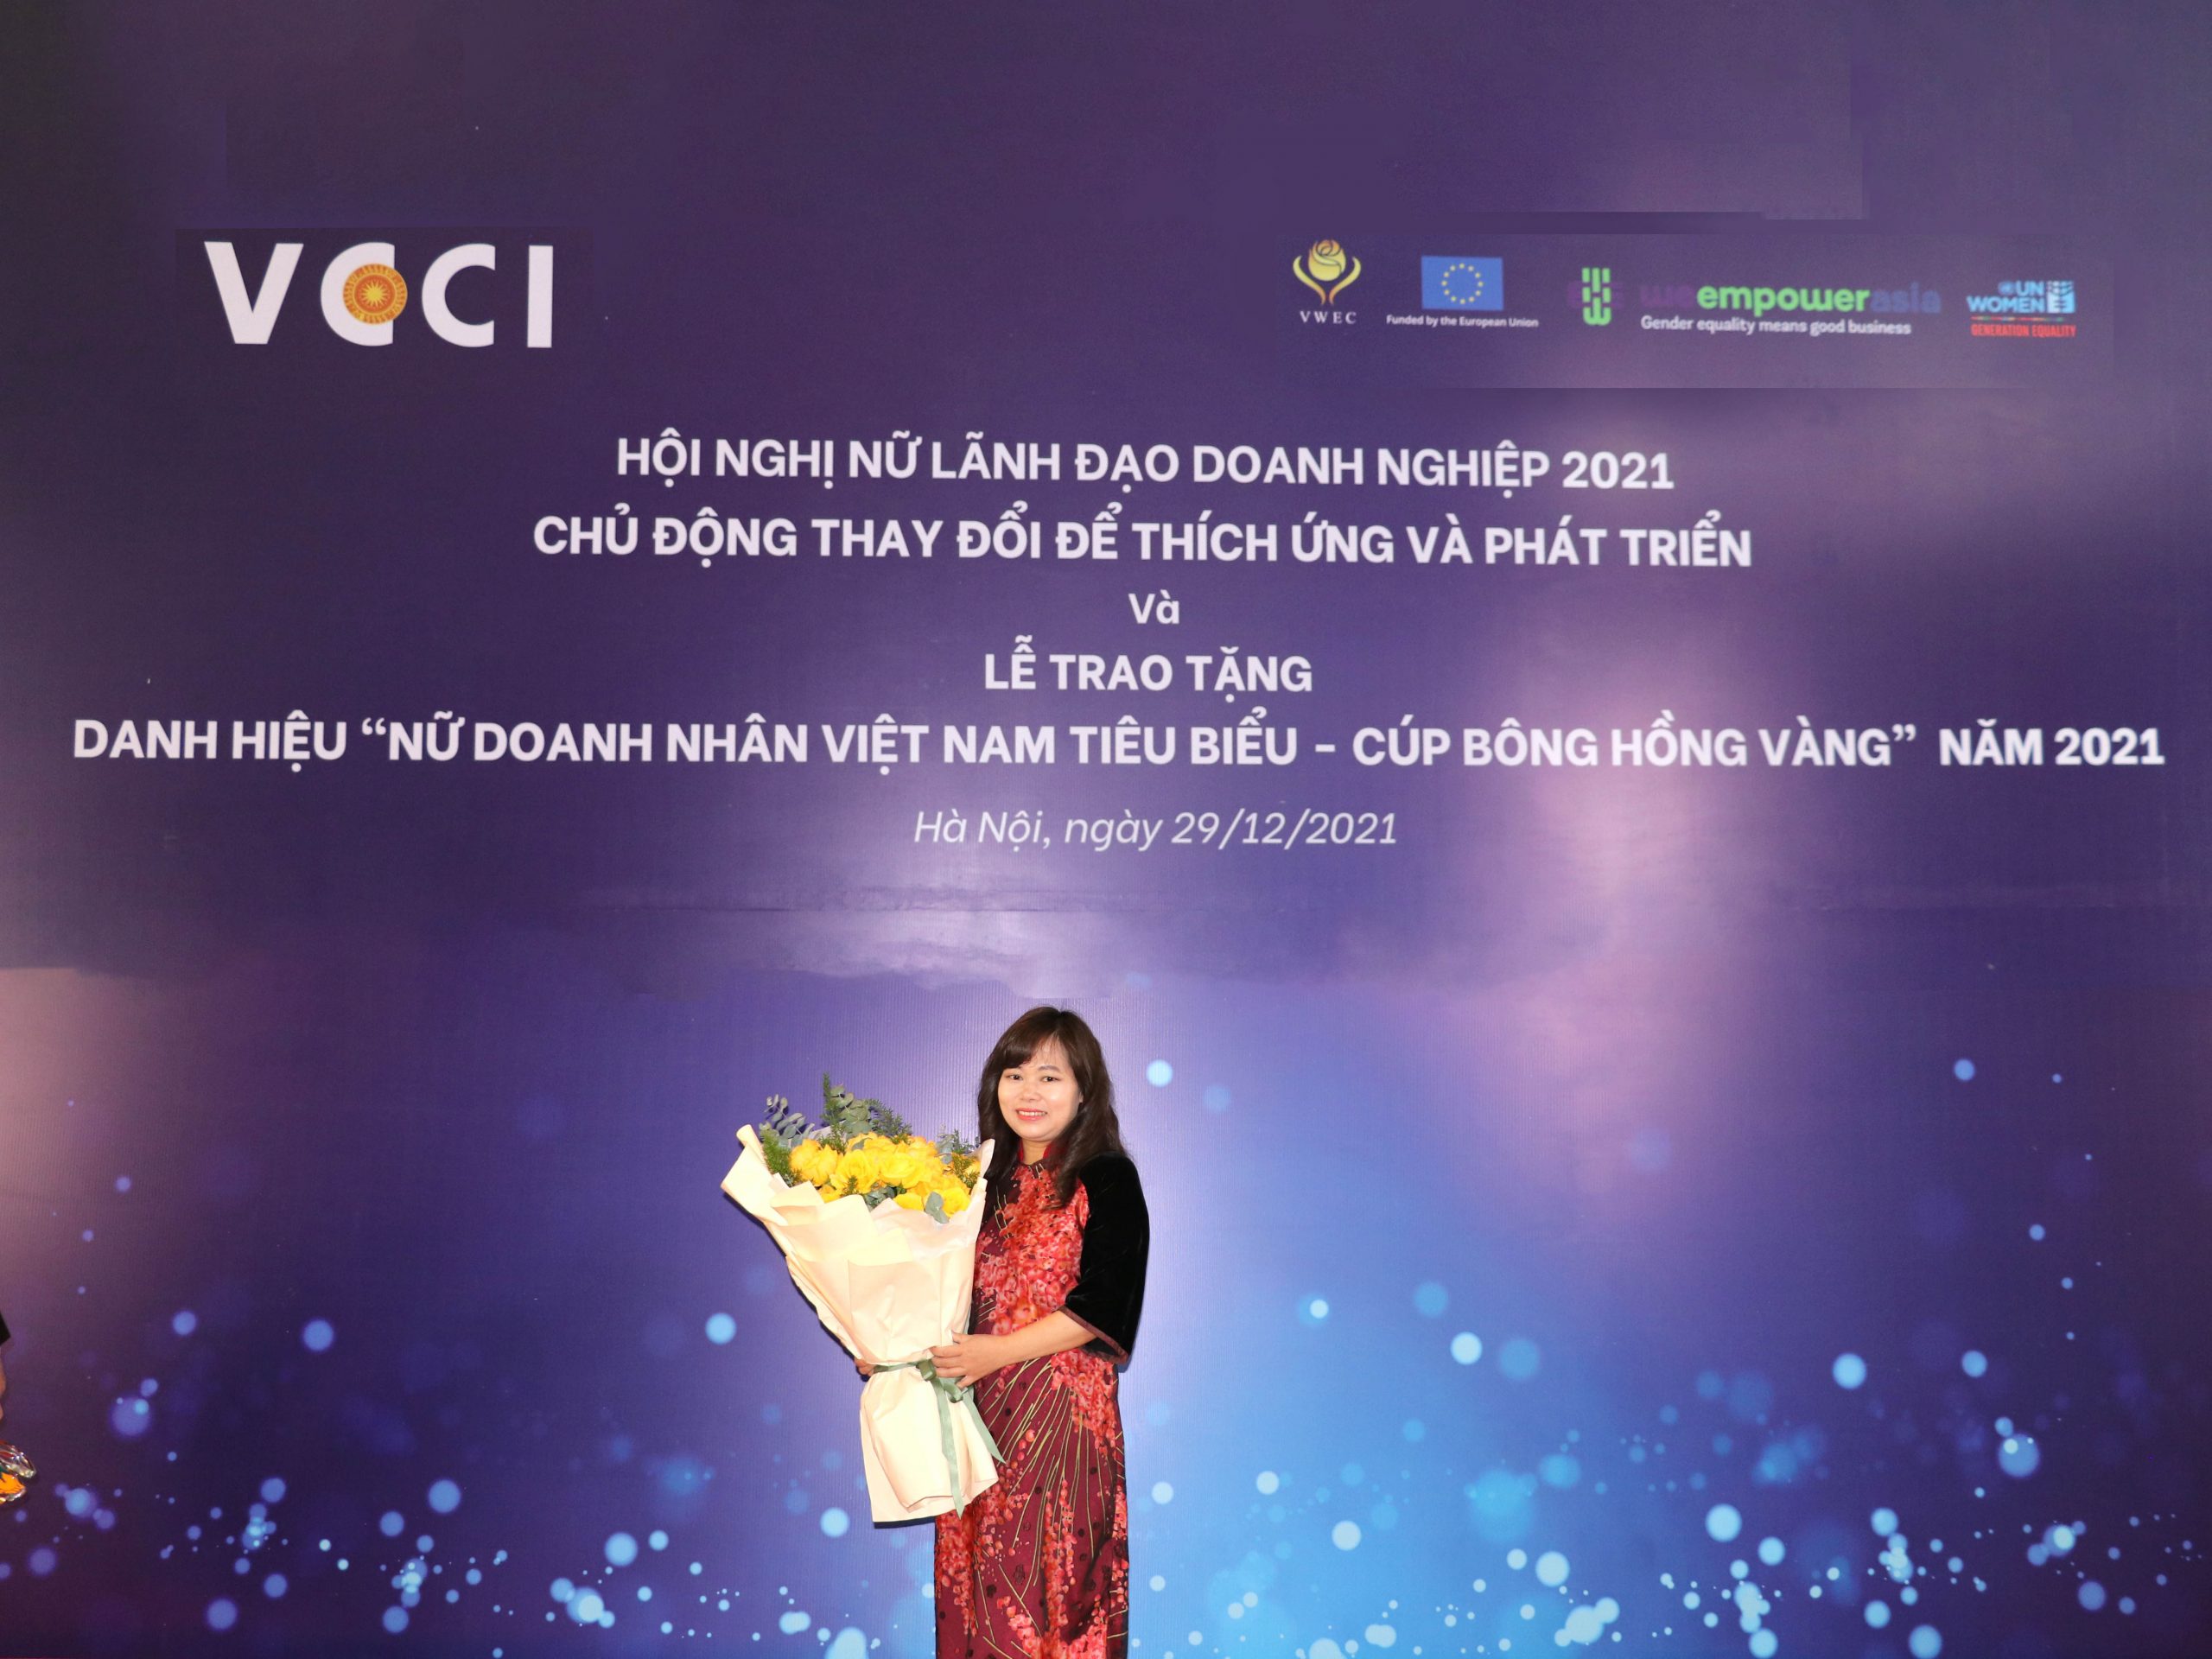 Chủ tịch Trần Thị Thu Trang trong buổi lễ trao giải Cúp bông hồng vàng 2021